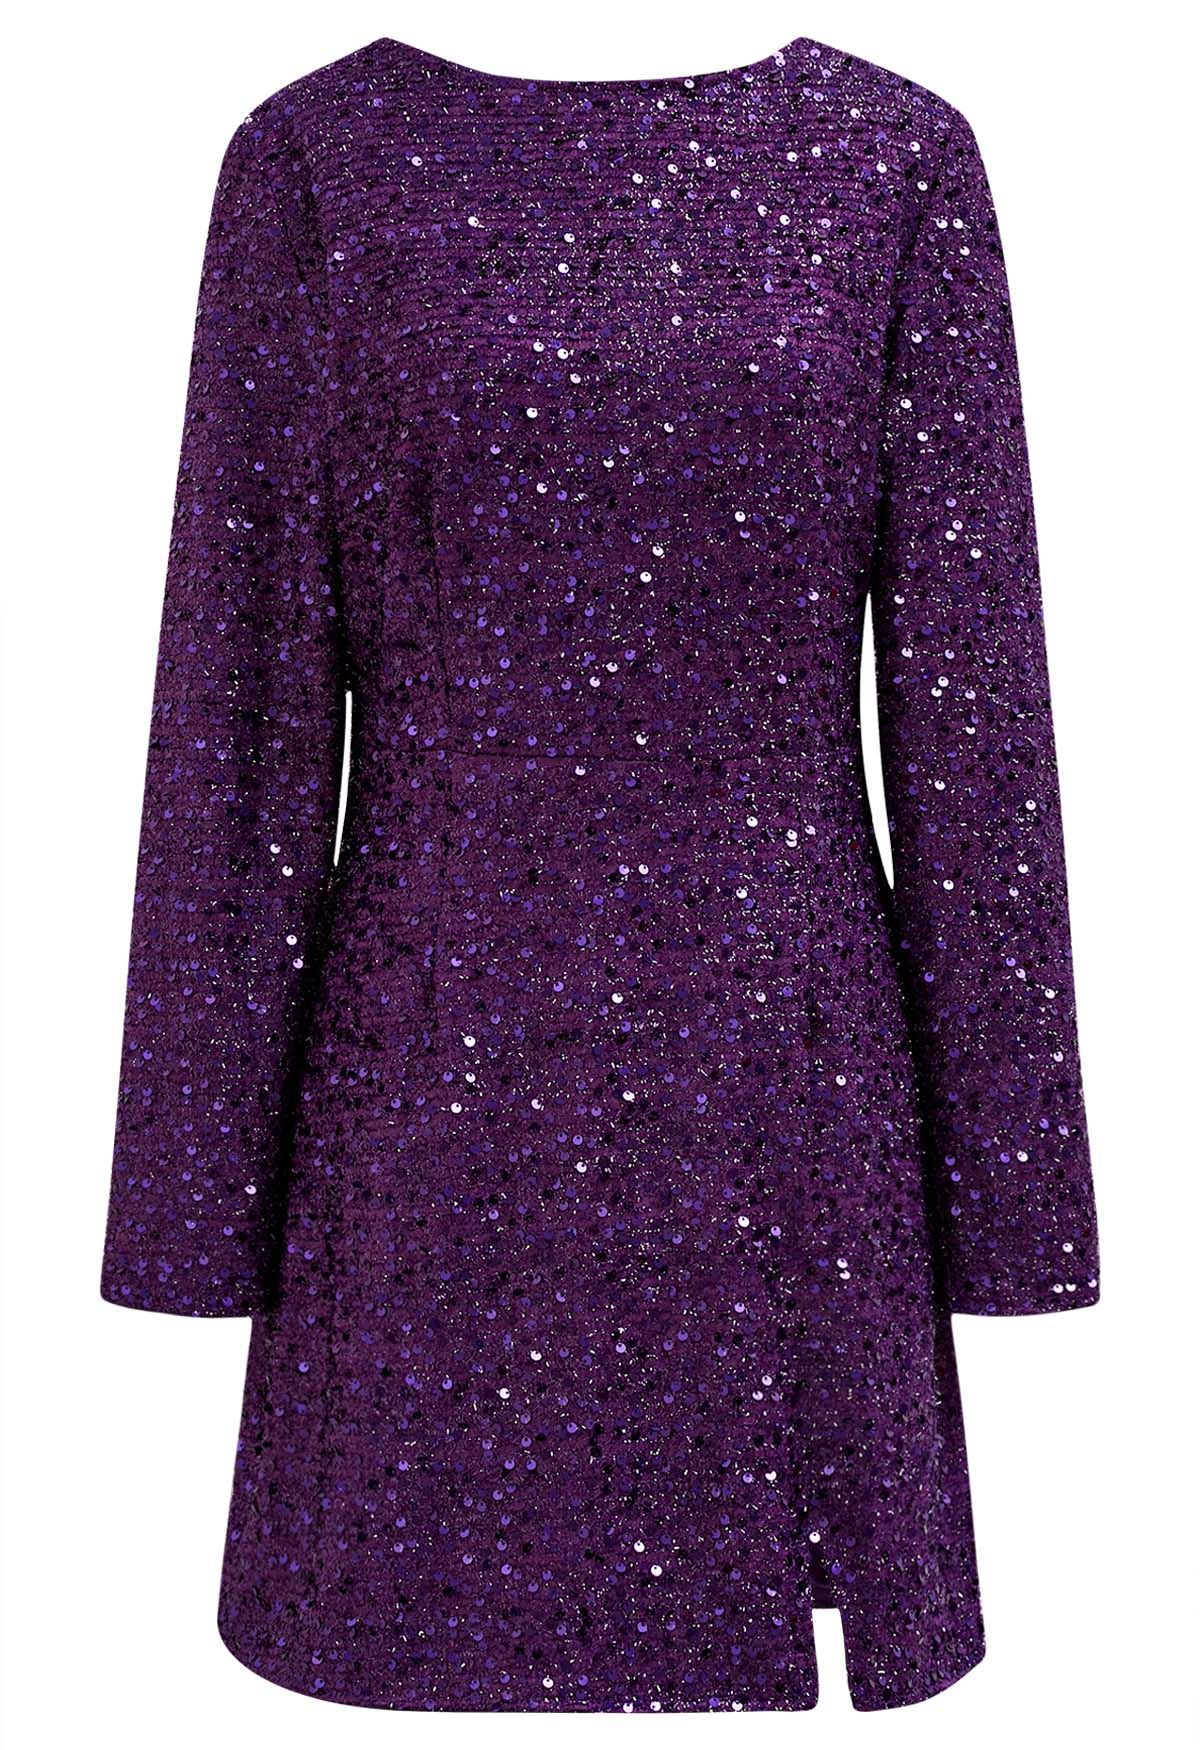 Sequin Cover Open Back Mini Dress in Purple - Retro, Indie and Unique ...